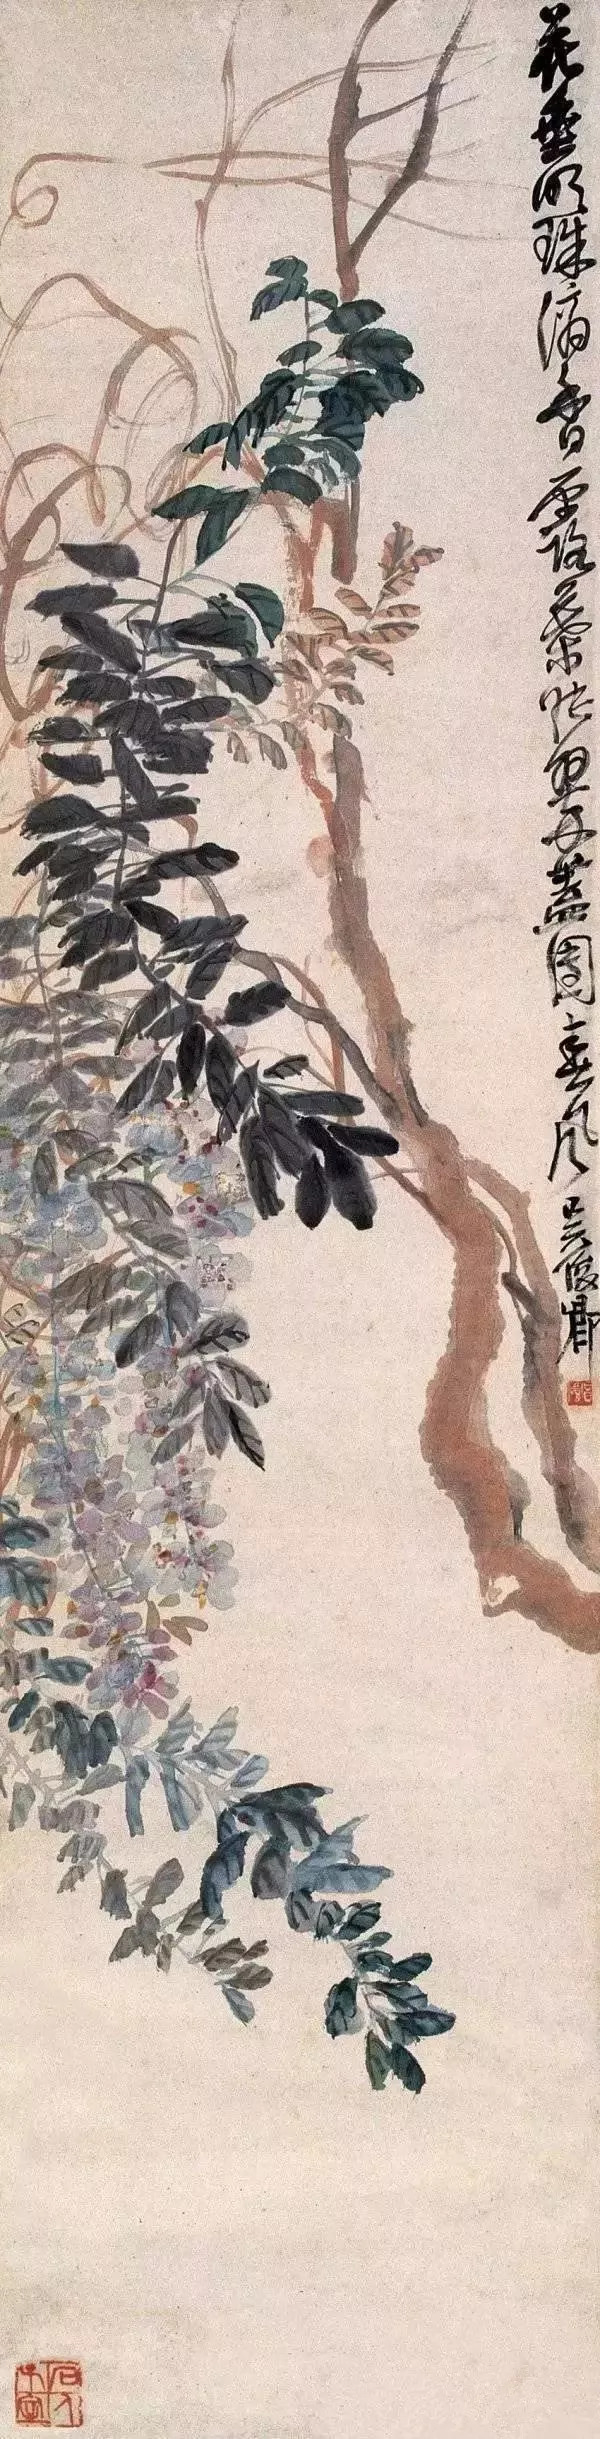 这种美学性格在吴昌硕的紫藤作品中抒写得相当生动尽致.